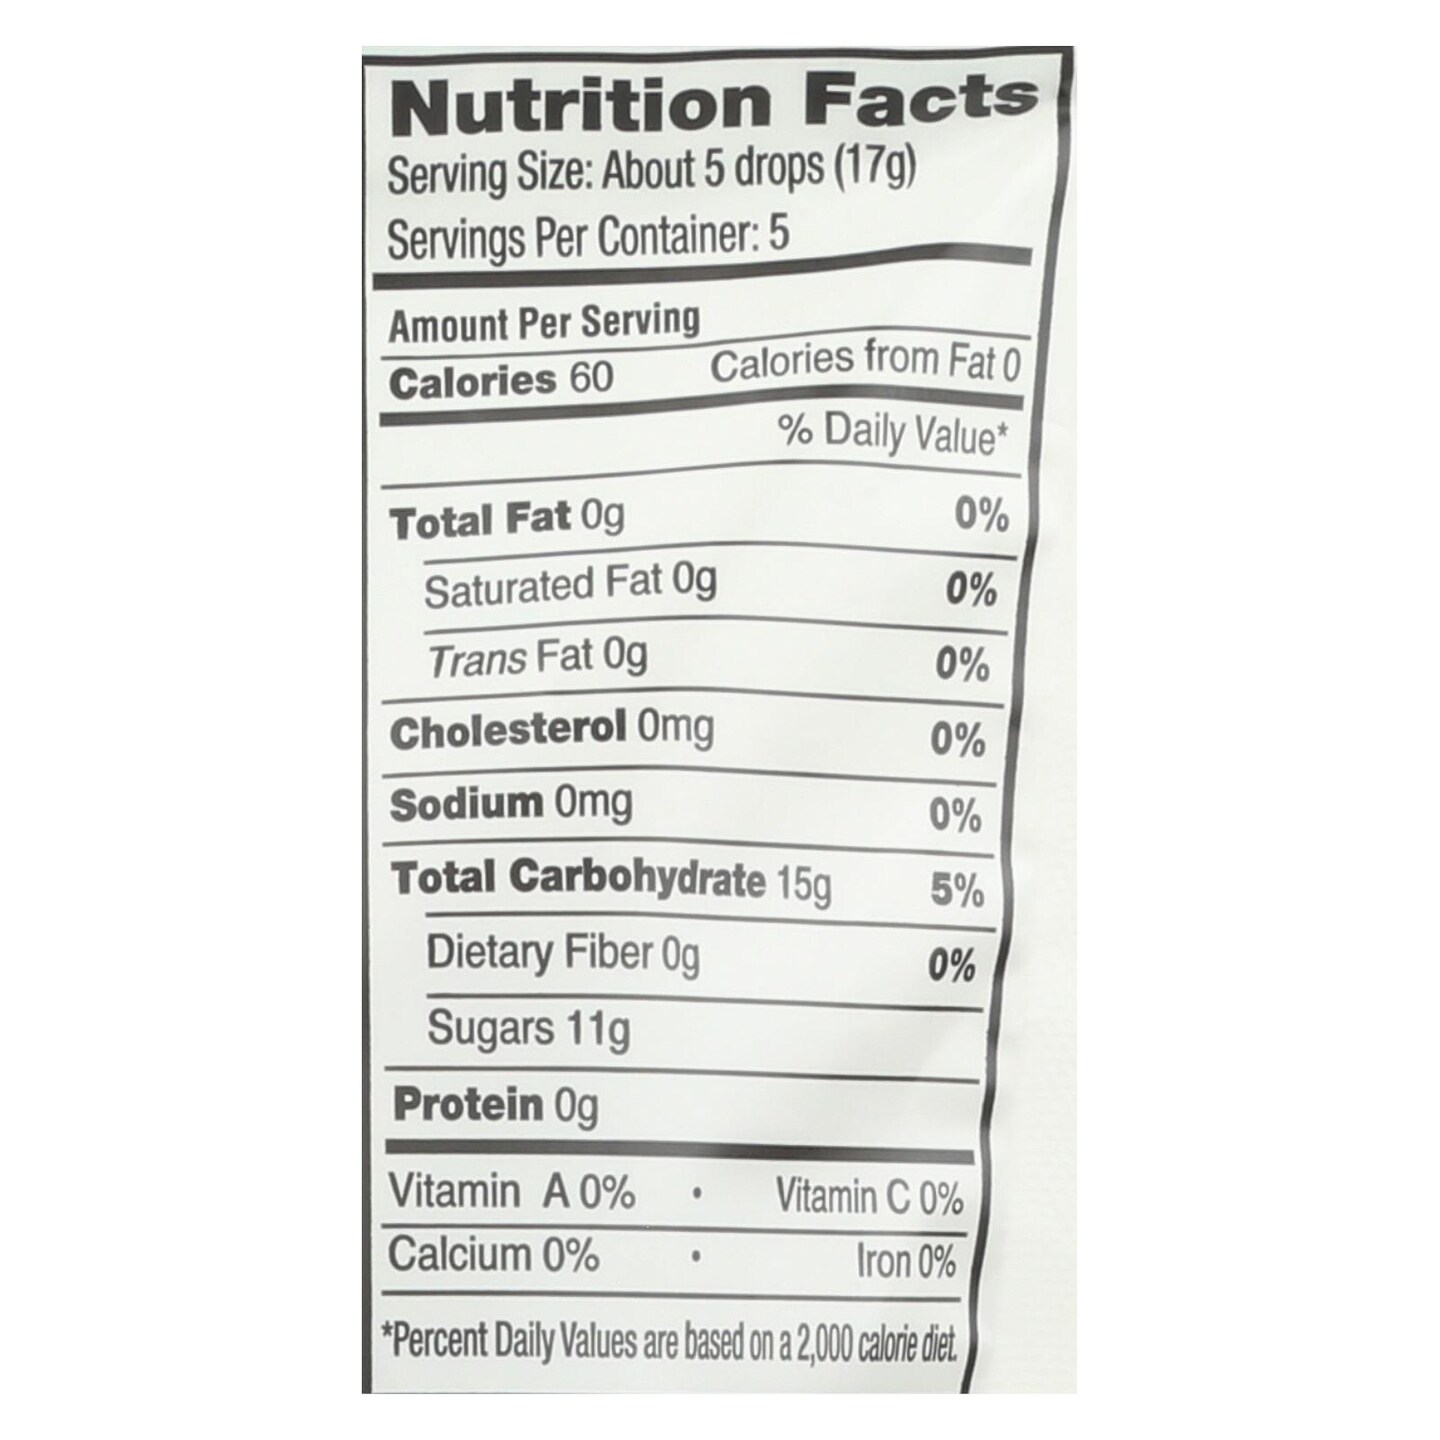 Yummy Earth Organic Candy Drops - 3.3 oz - Case of 6